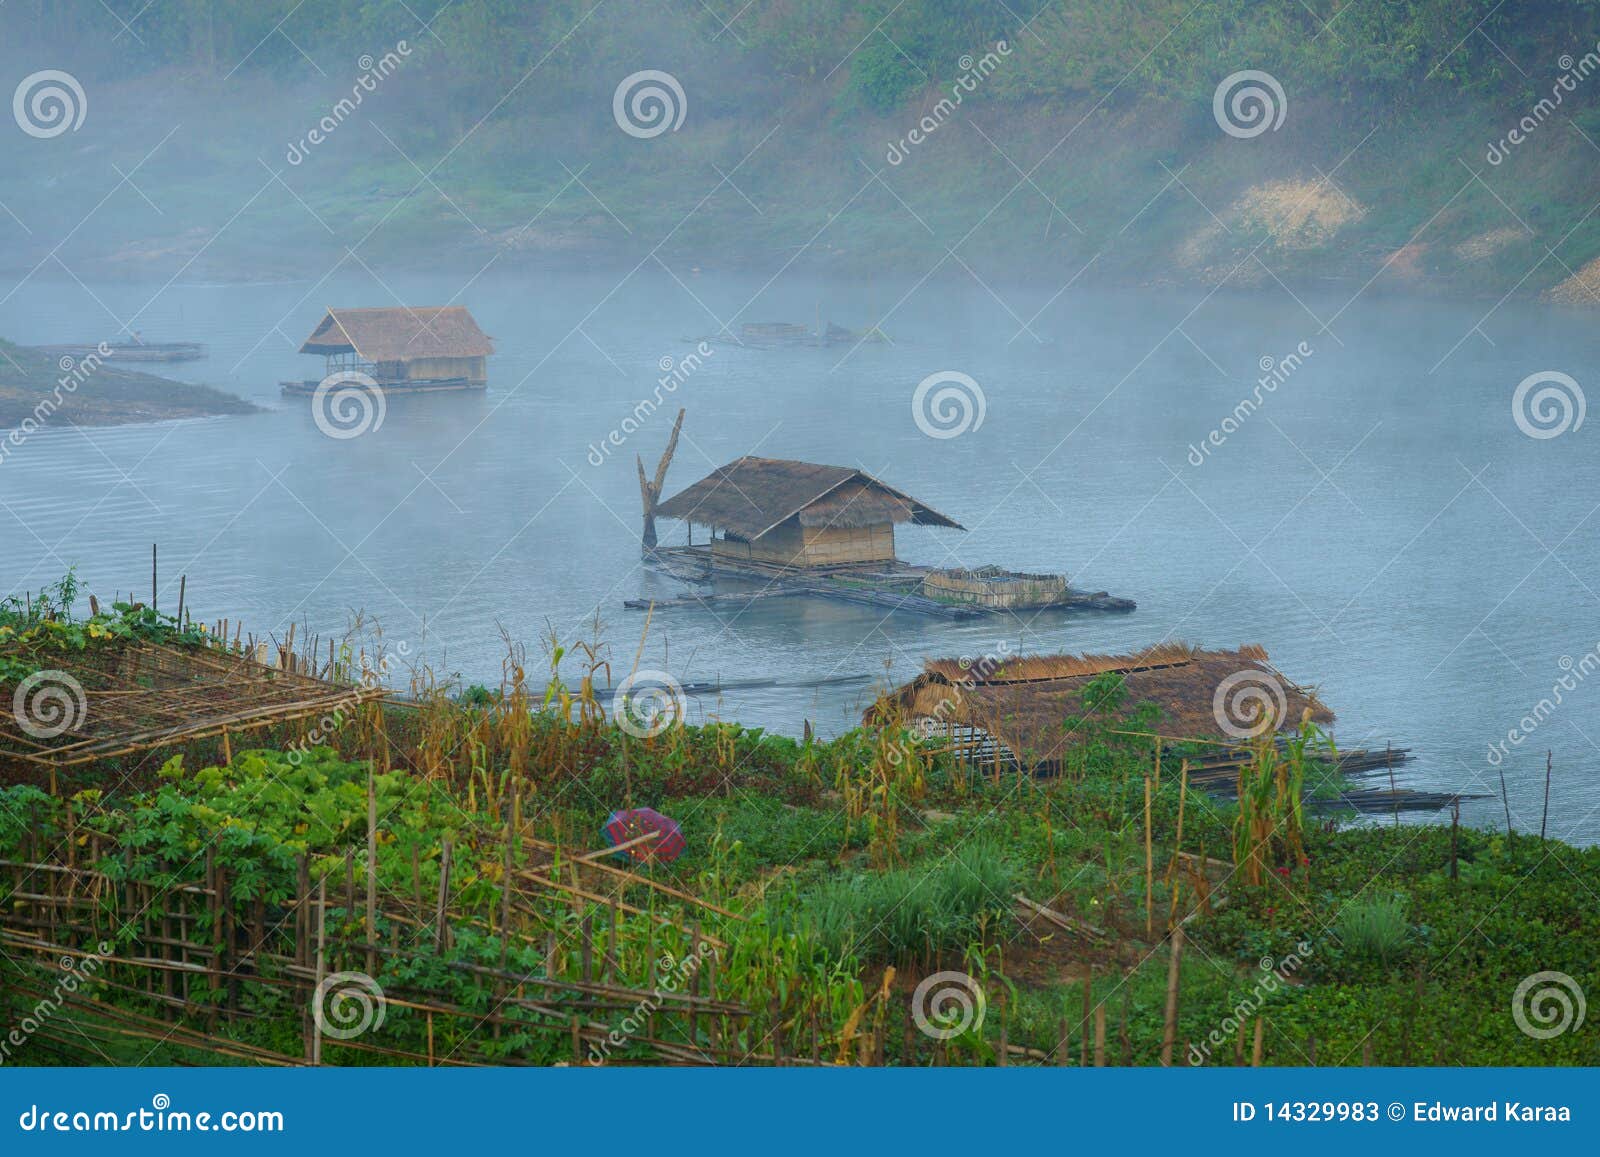 floating houses, mon village, bathing in fog.